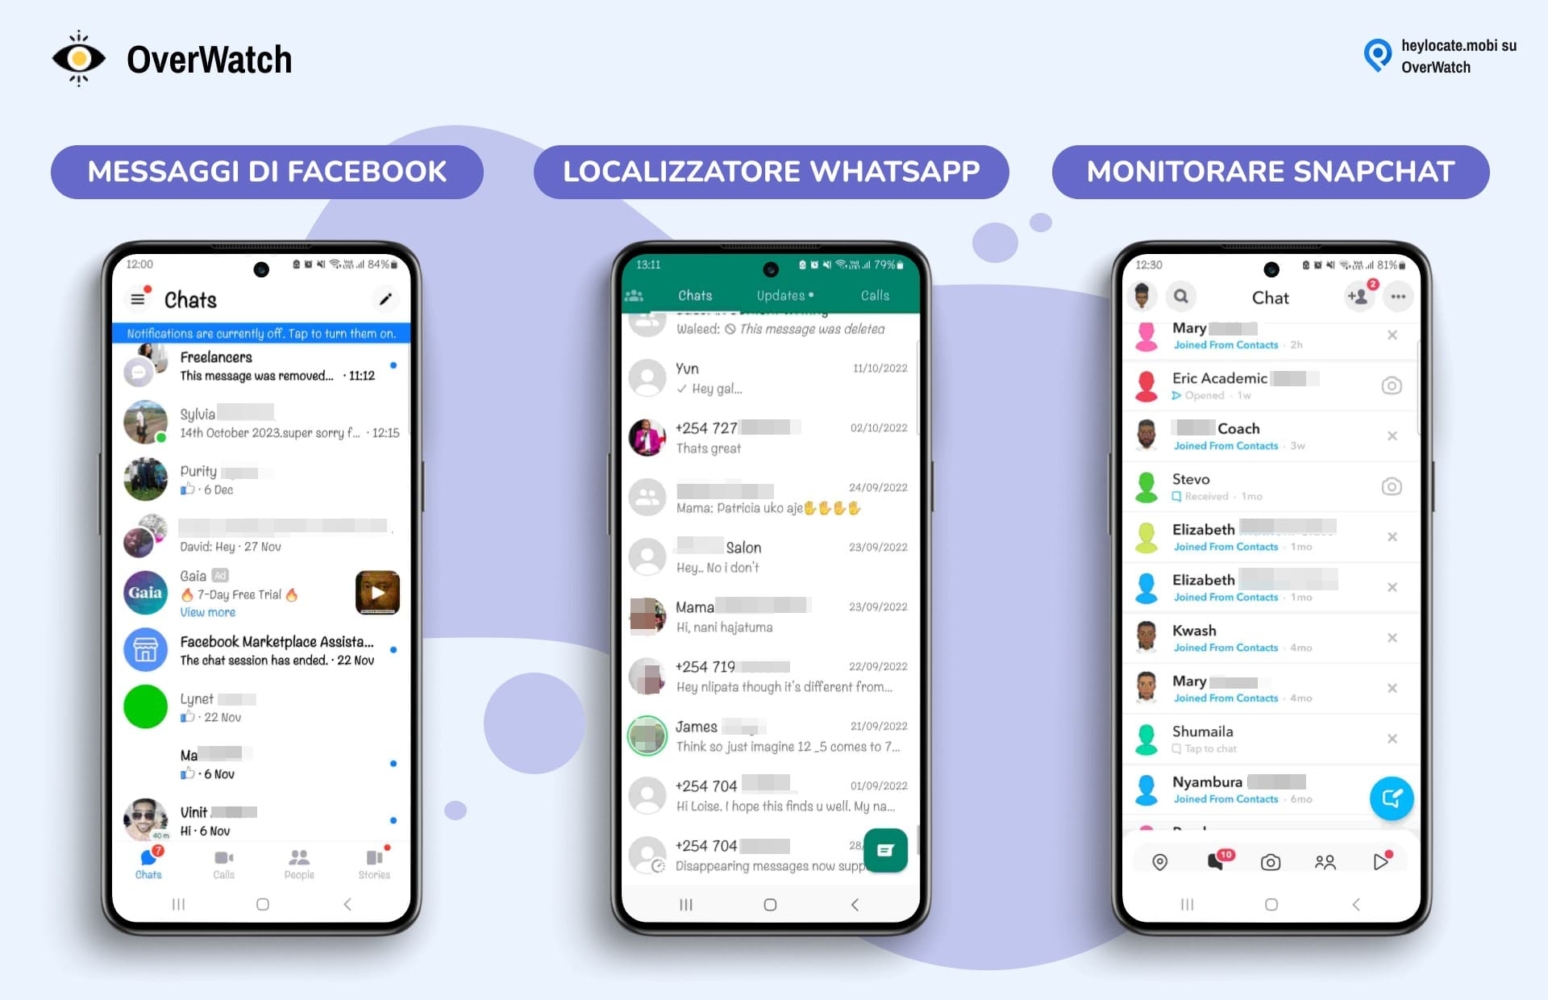 Le funzionalità di tracciamento dei social media di Overwatch, che mostrano le interfacce per il monitoraggio dei messaggi di Facebook, WhatsApp e Snapchat.